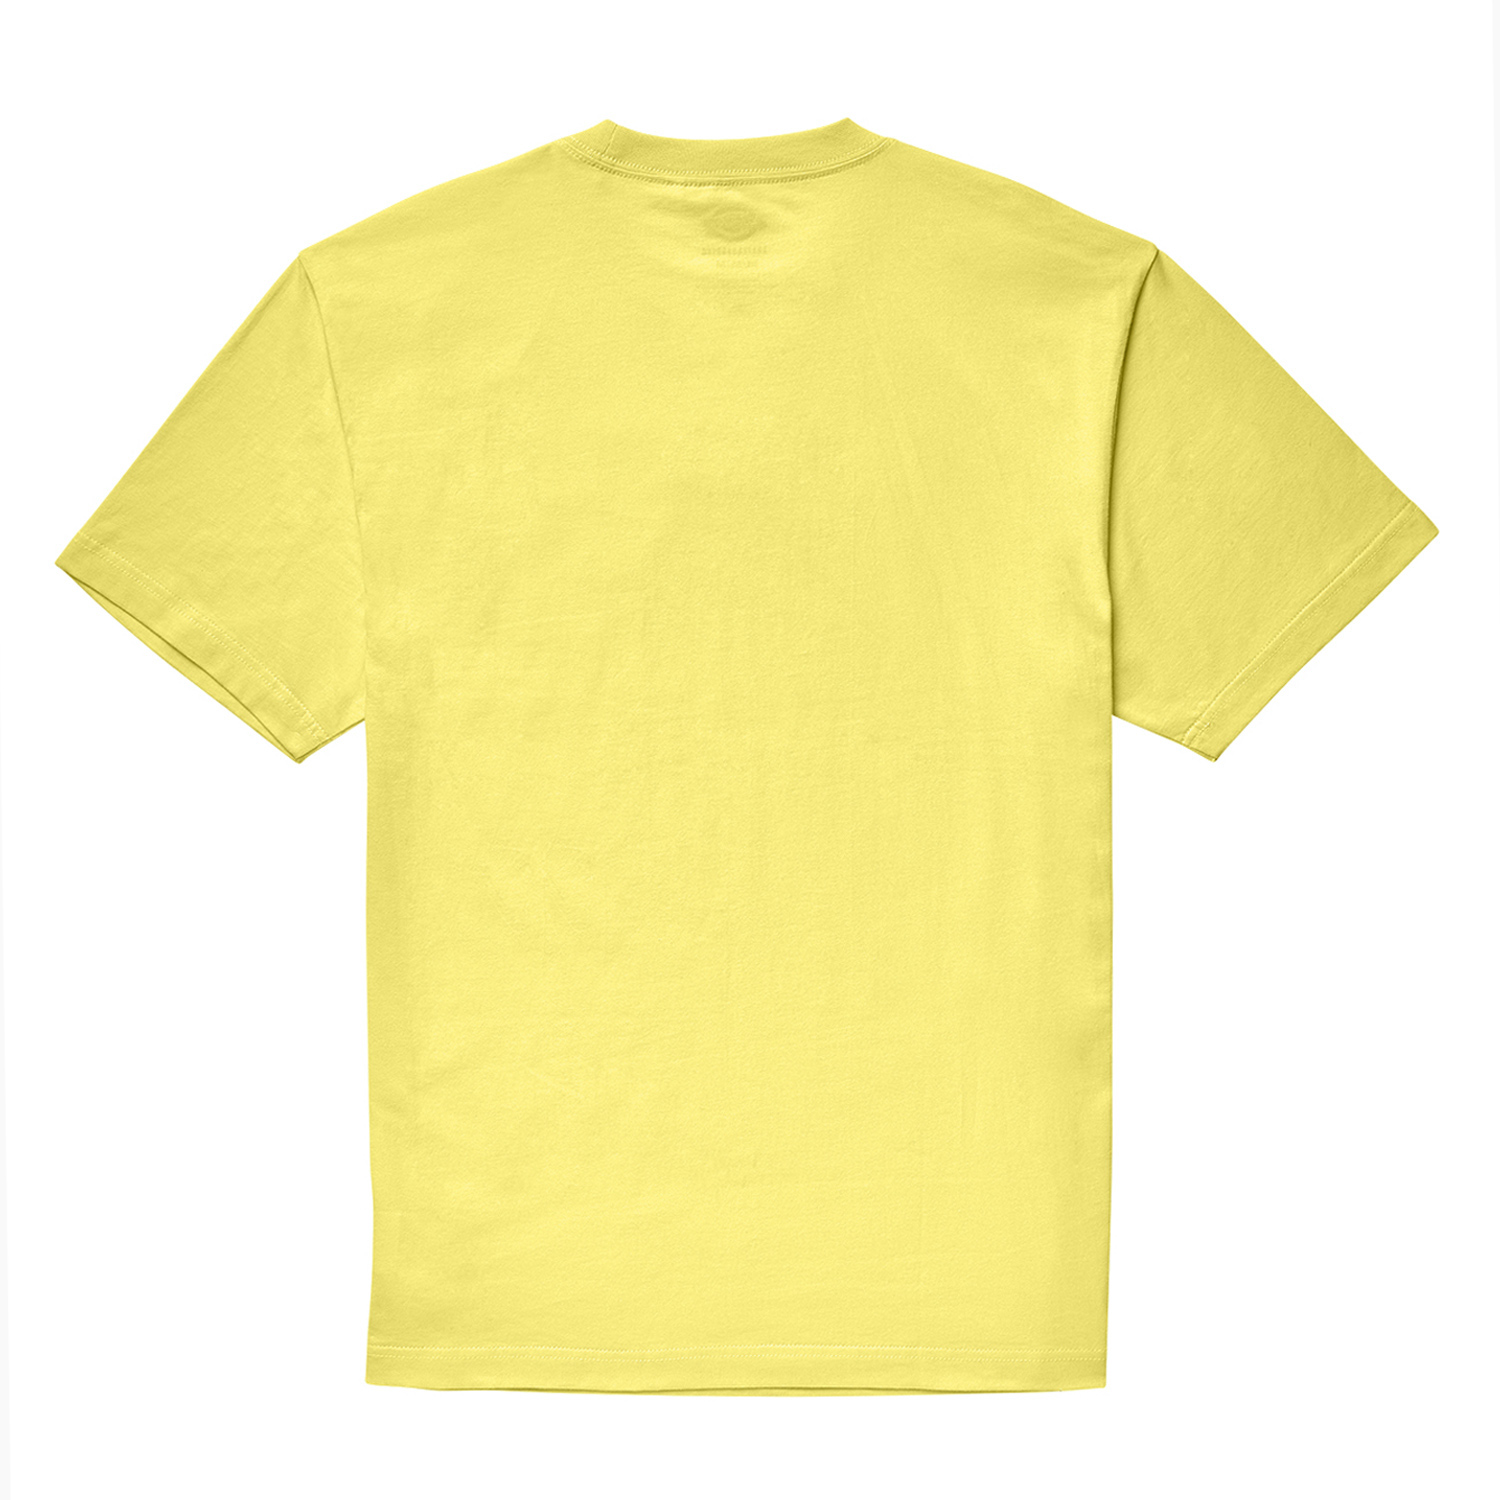 GUY MARIANO エンブロイダリー S/S Tシャツ レギュラーフィット image number 1